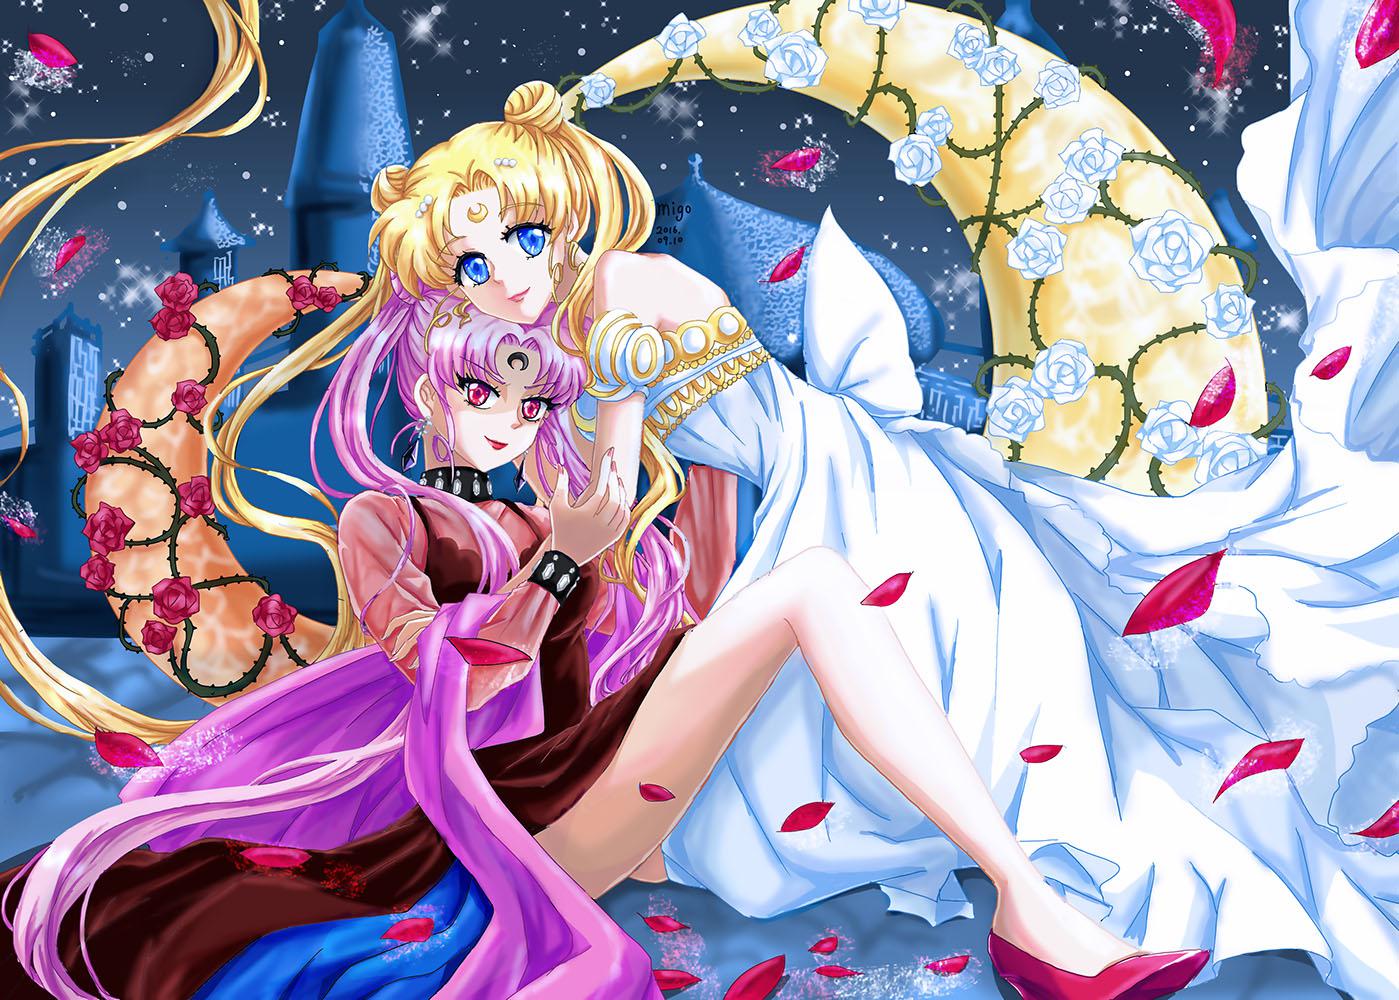 月 ~ Sailor Moon Version ~